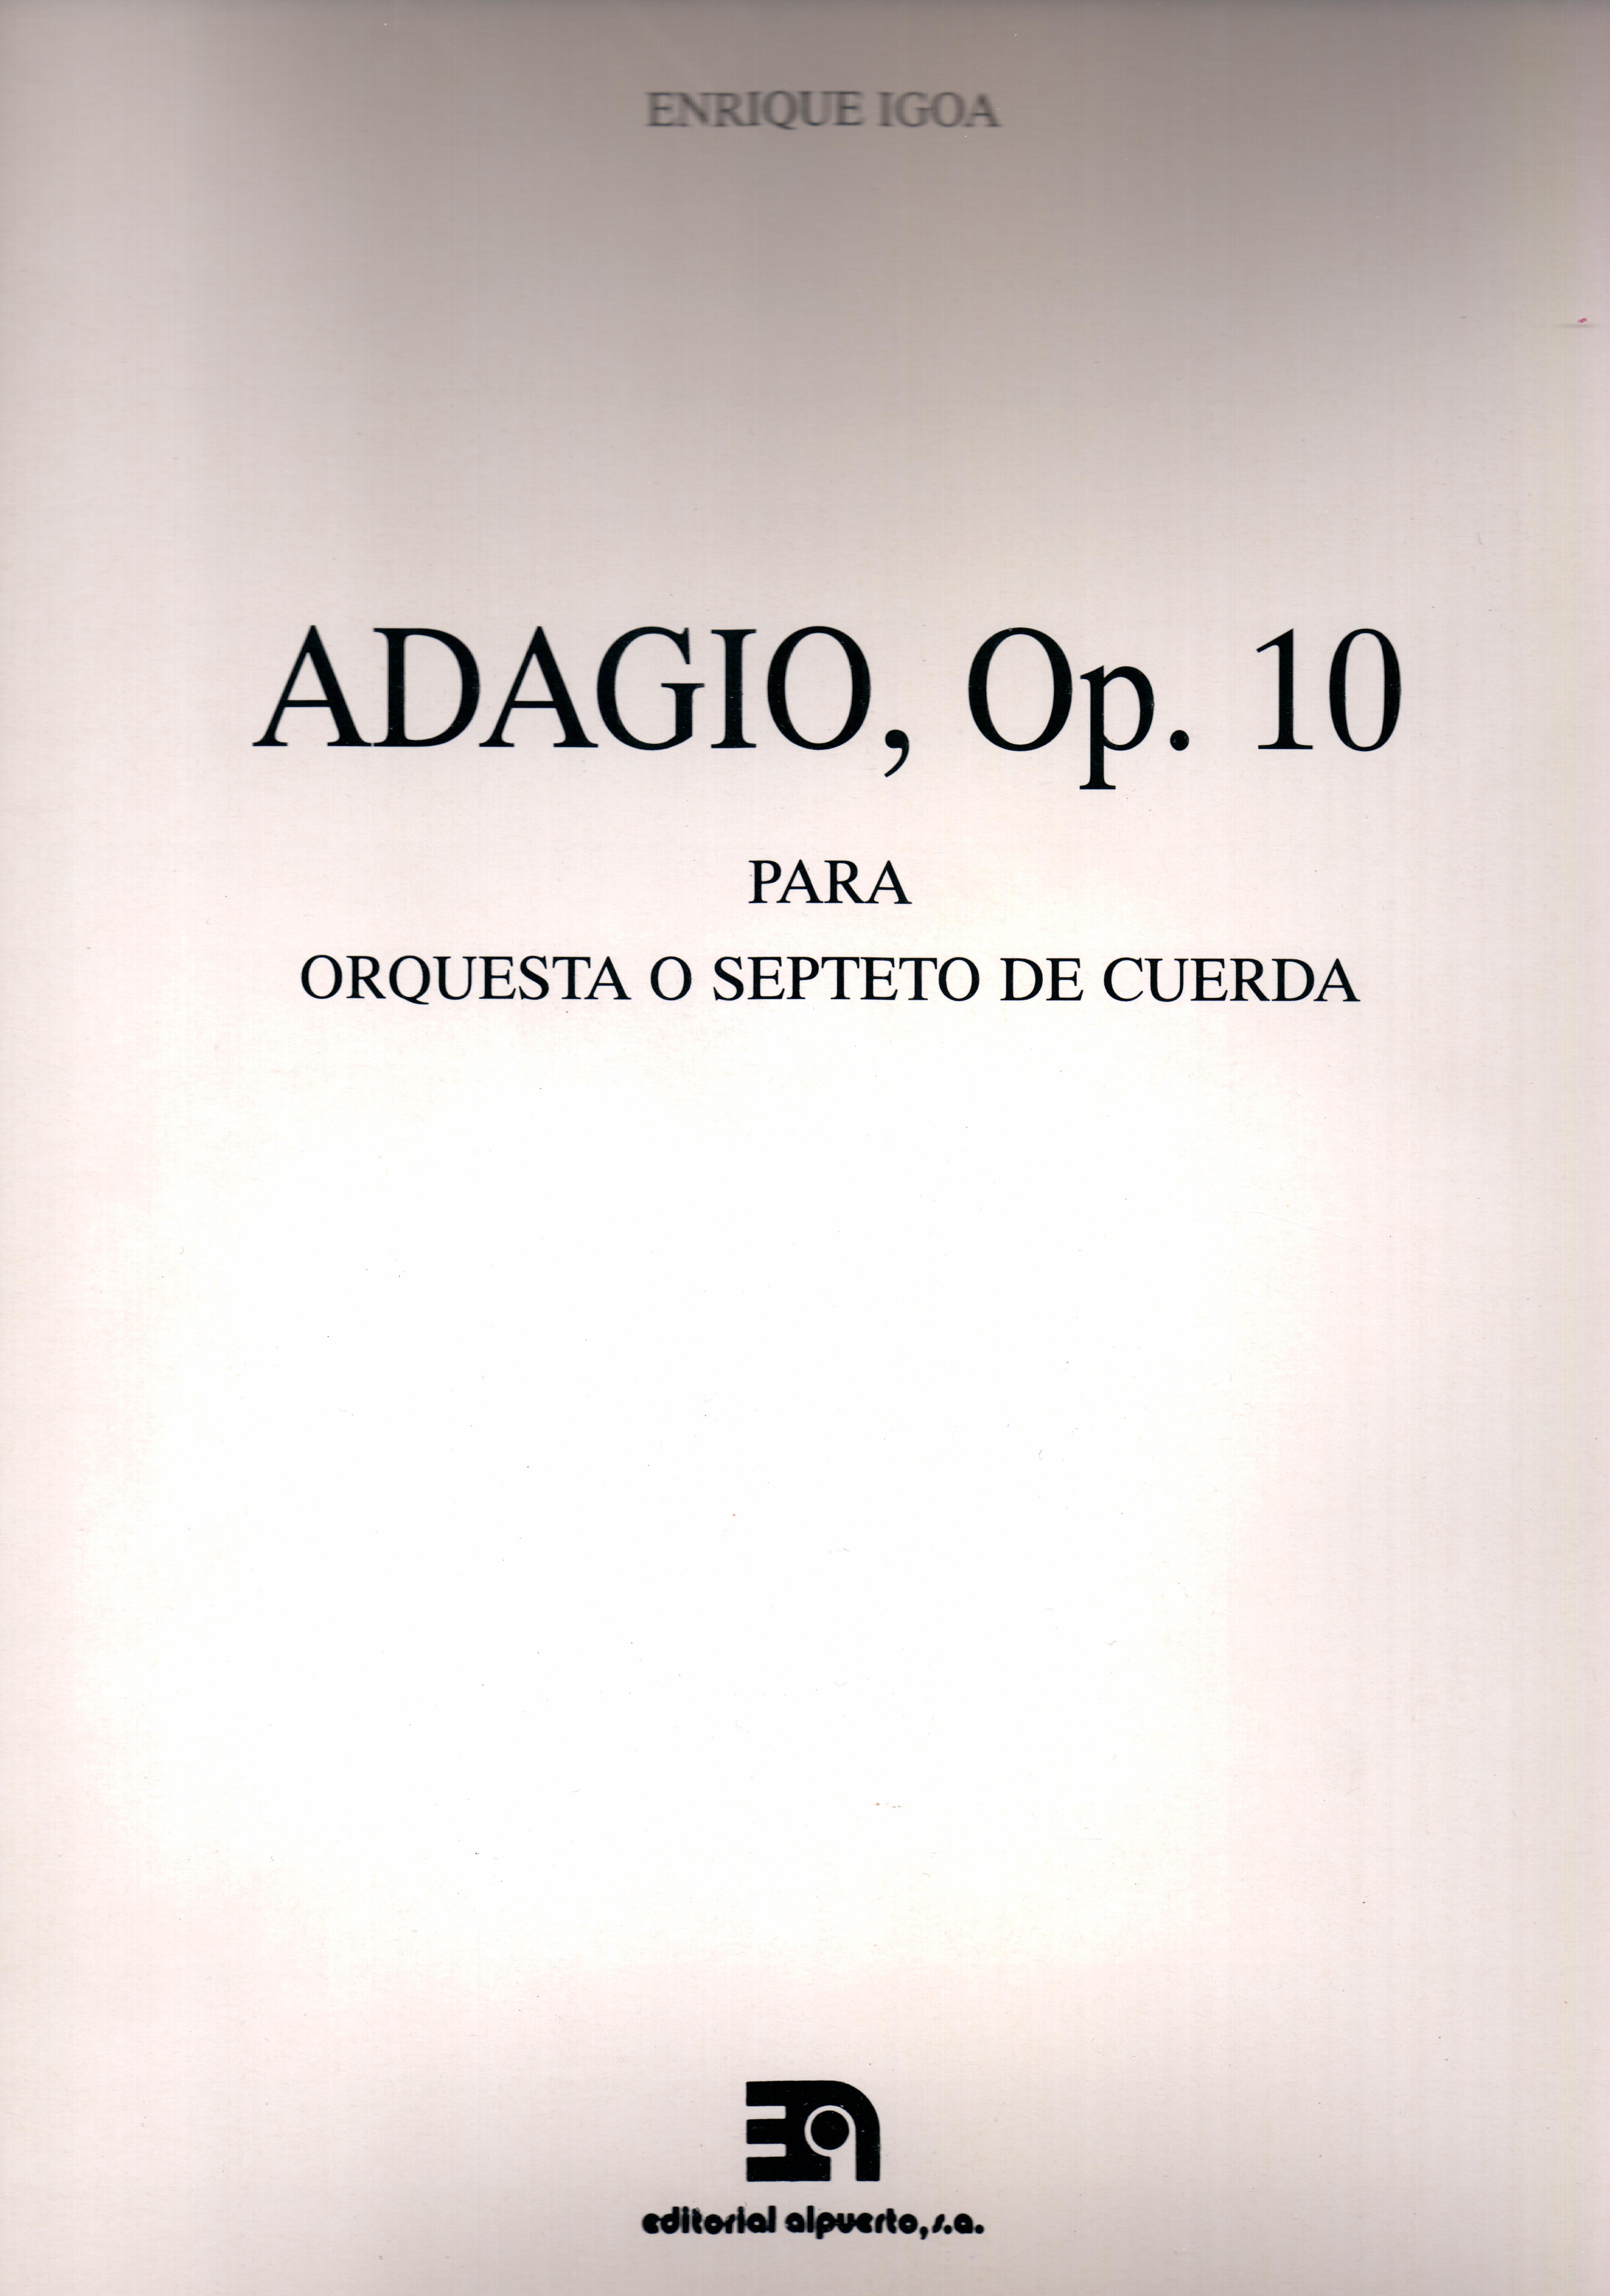 Adagio, op. 10